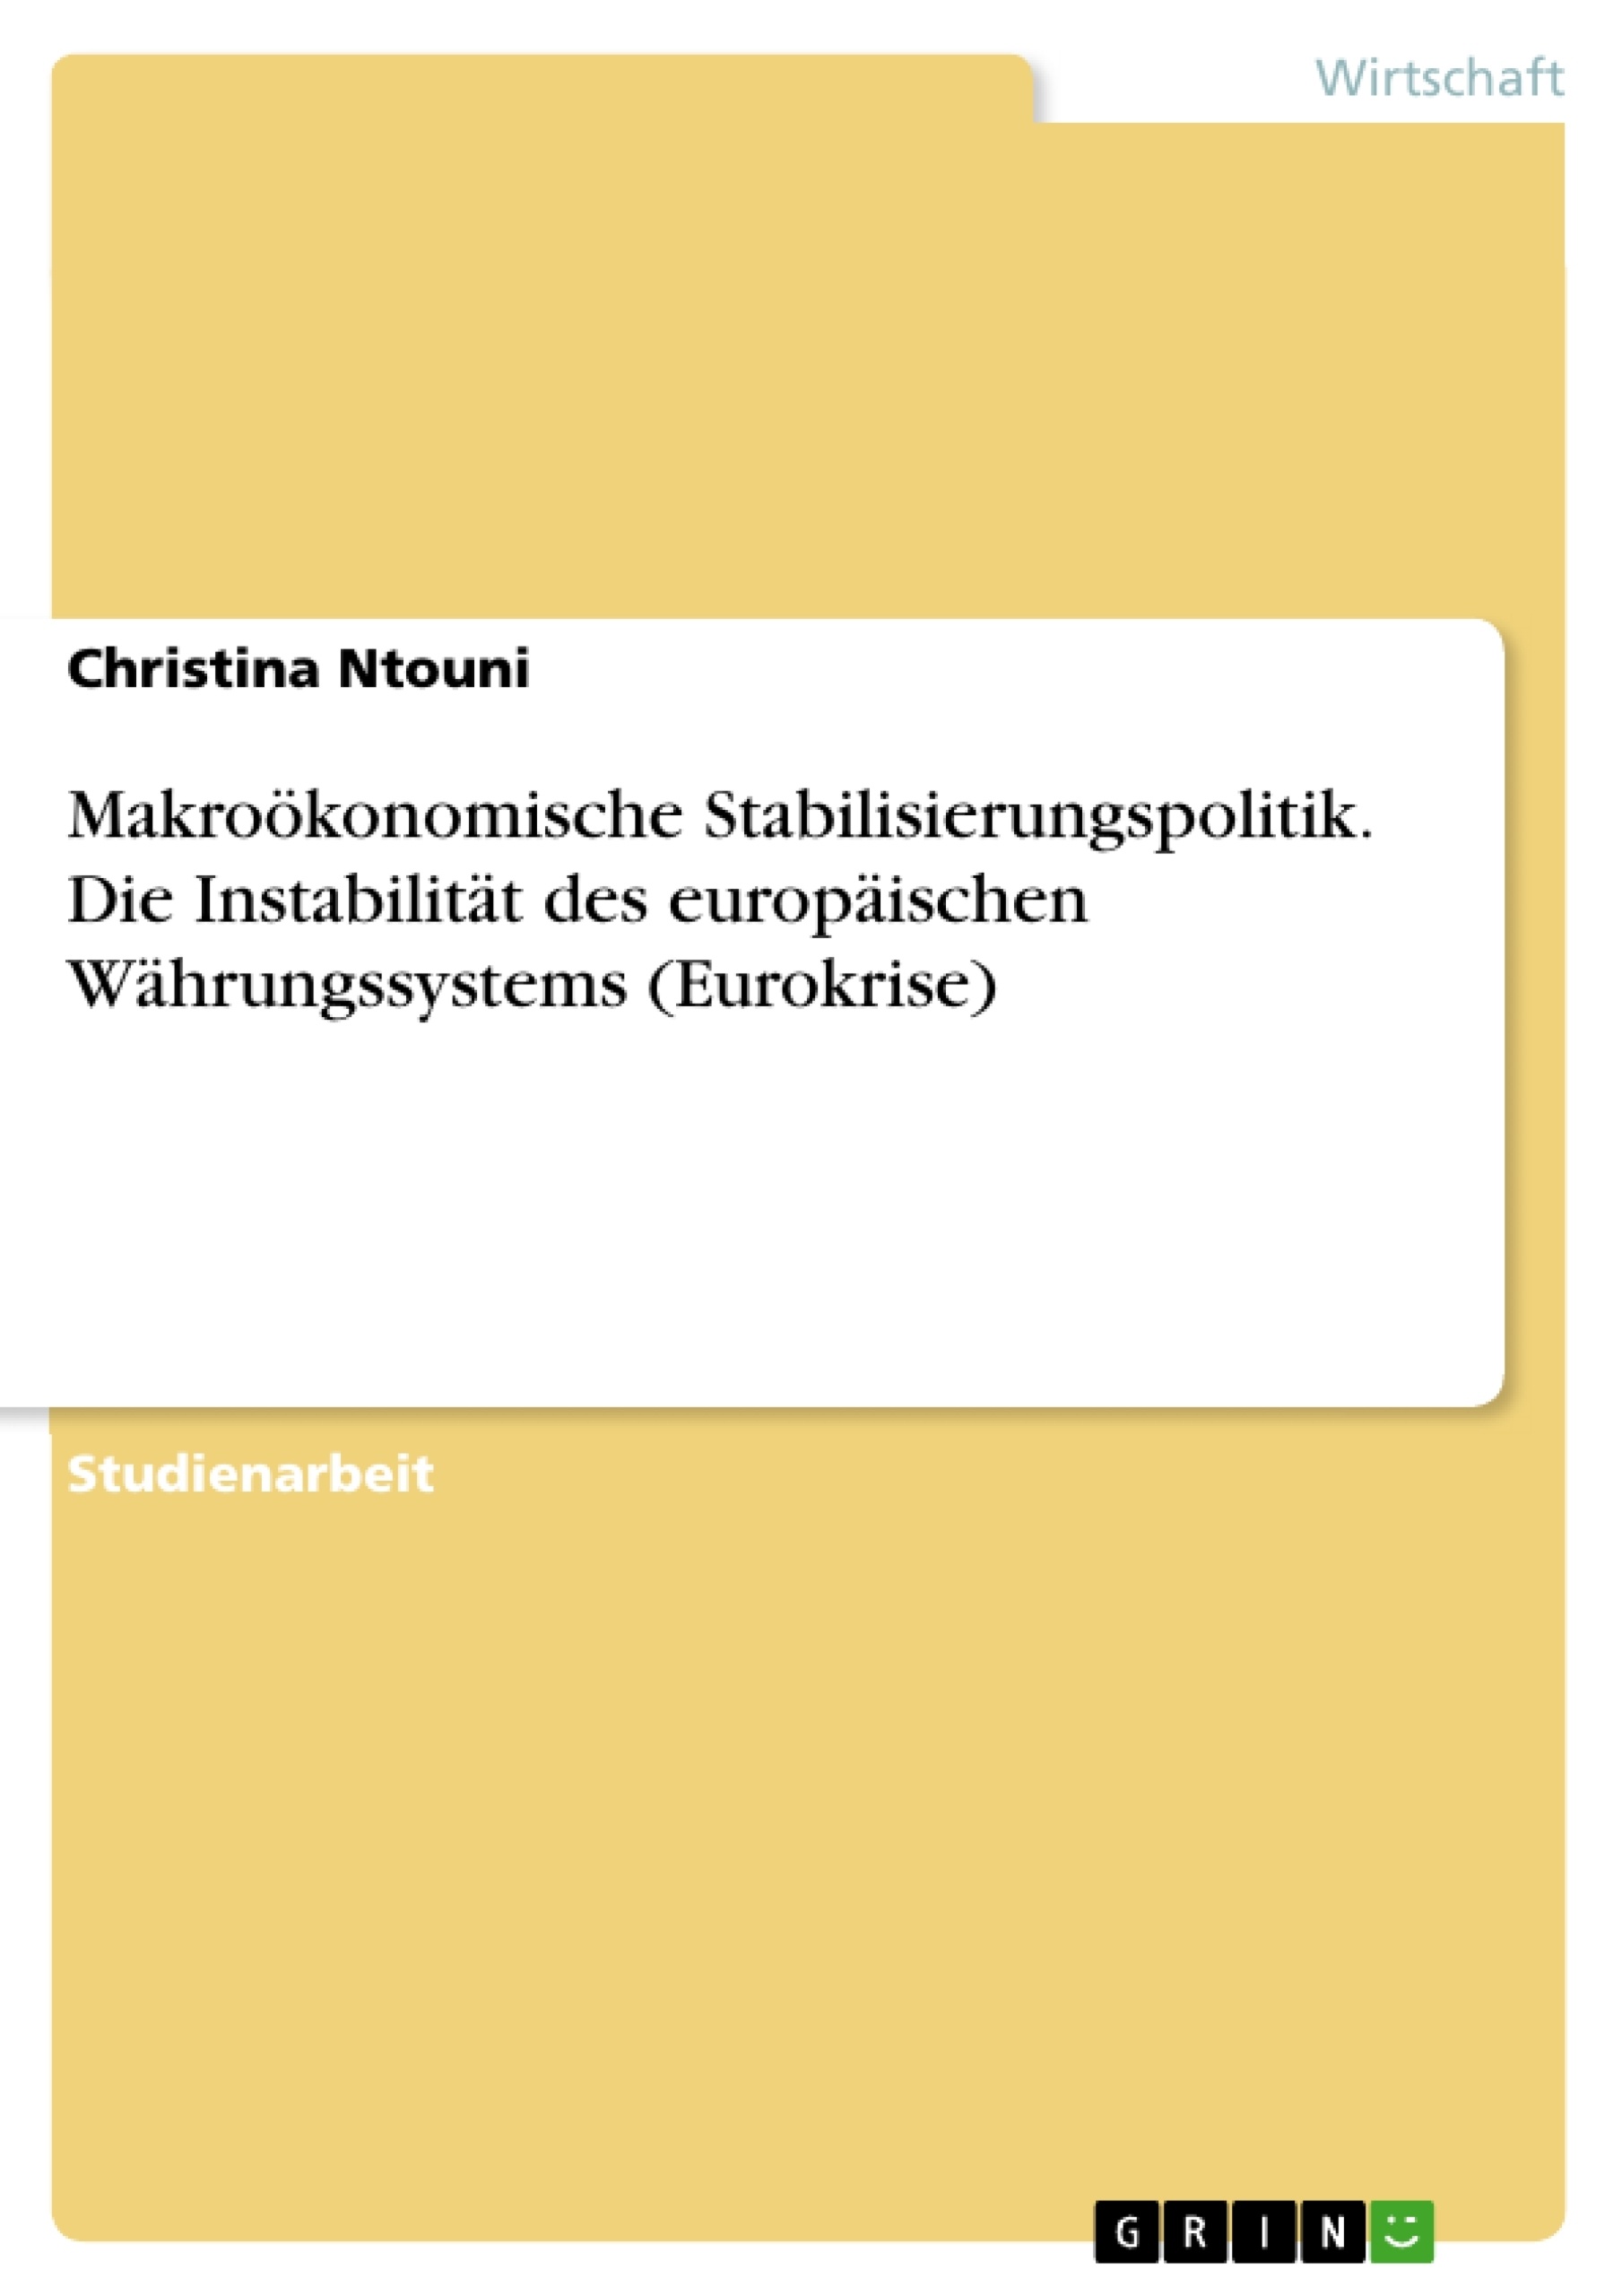 Titel: Makroökonomische Stabilisierungspolitik. Die Instabilität des europäischen Währungssystems (Eurokrise)